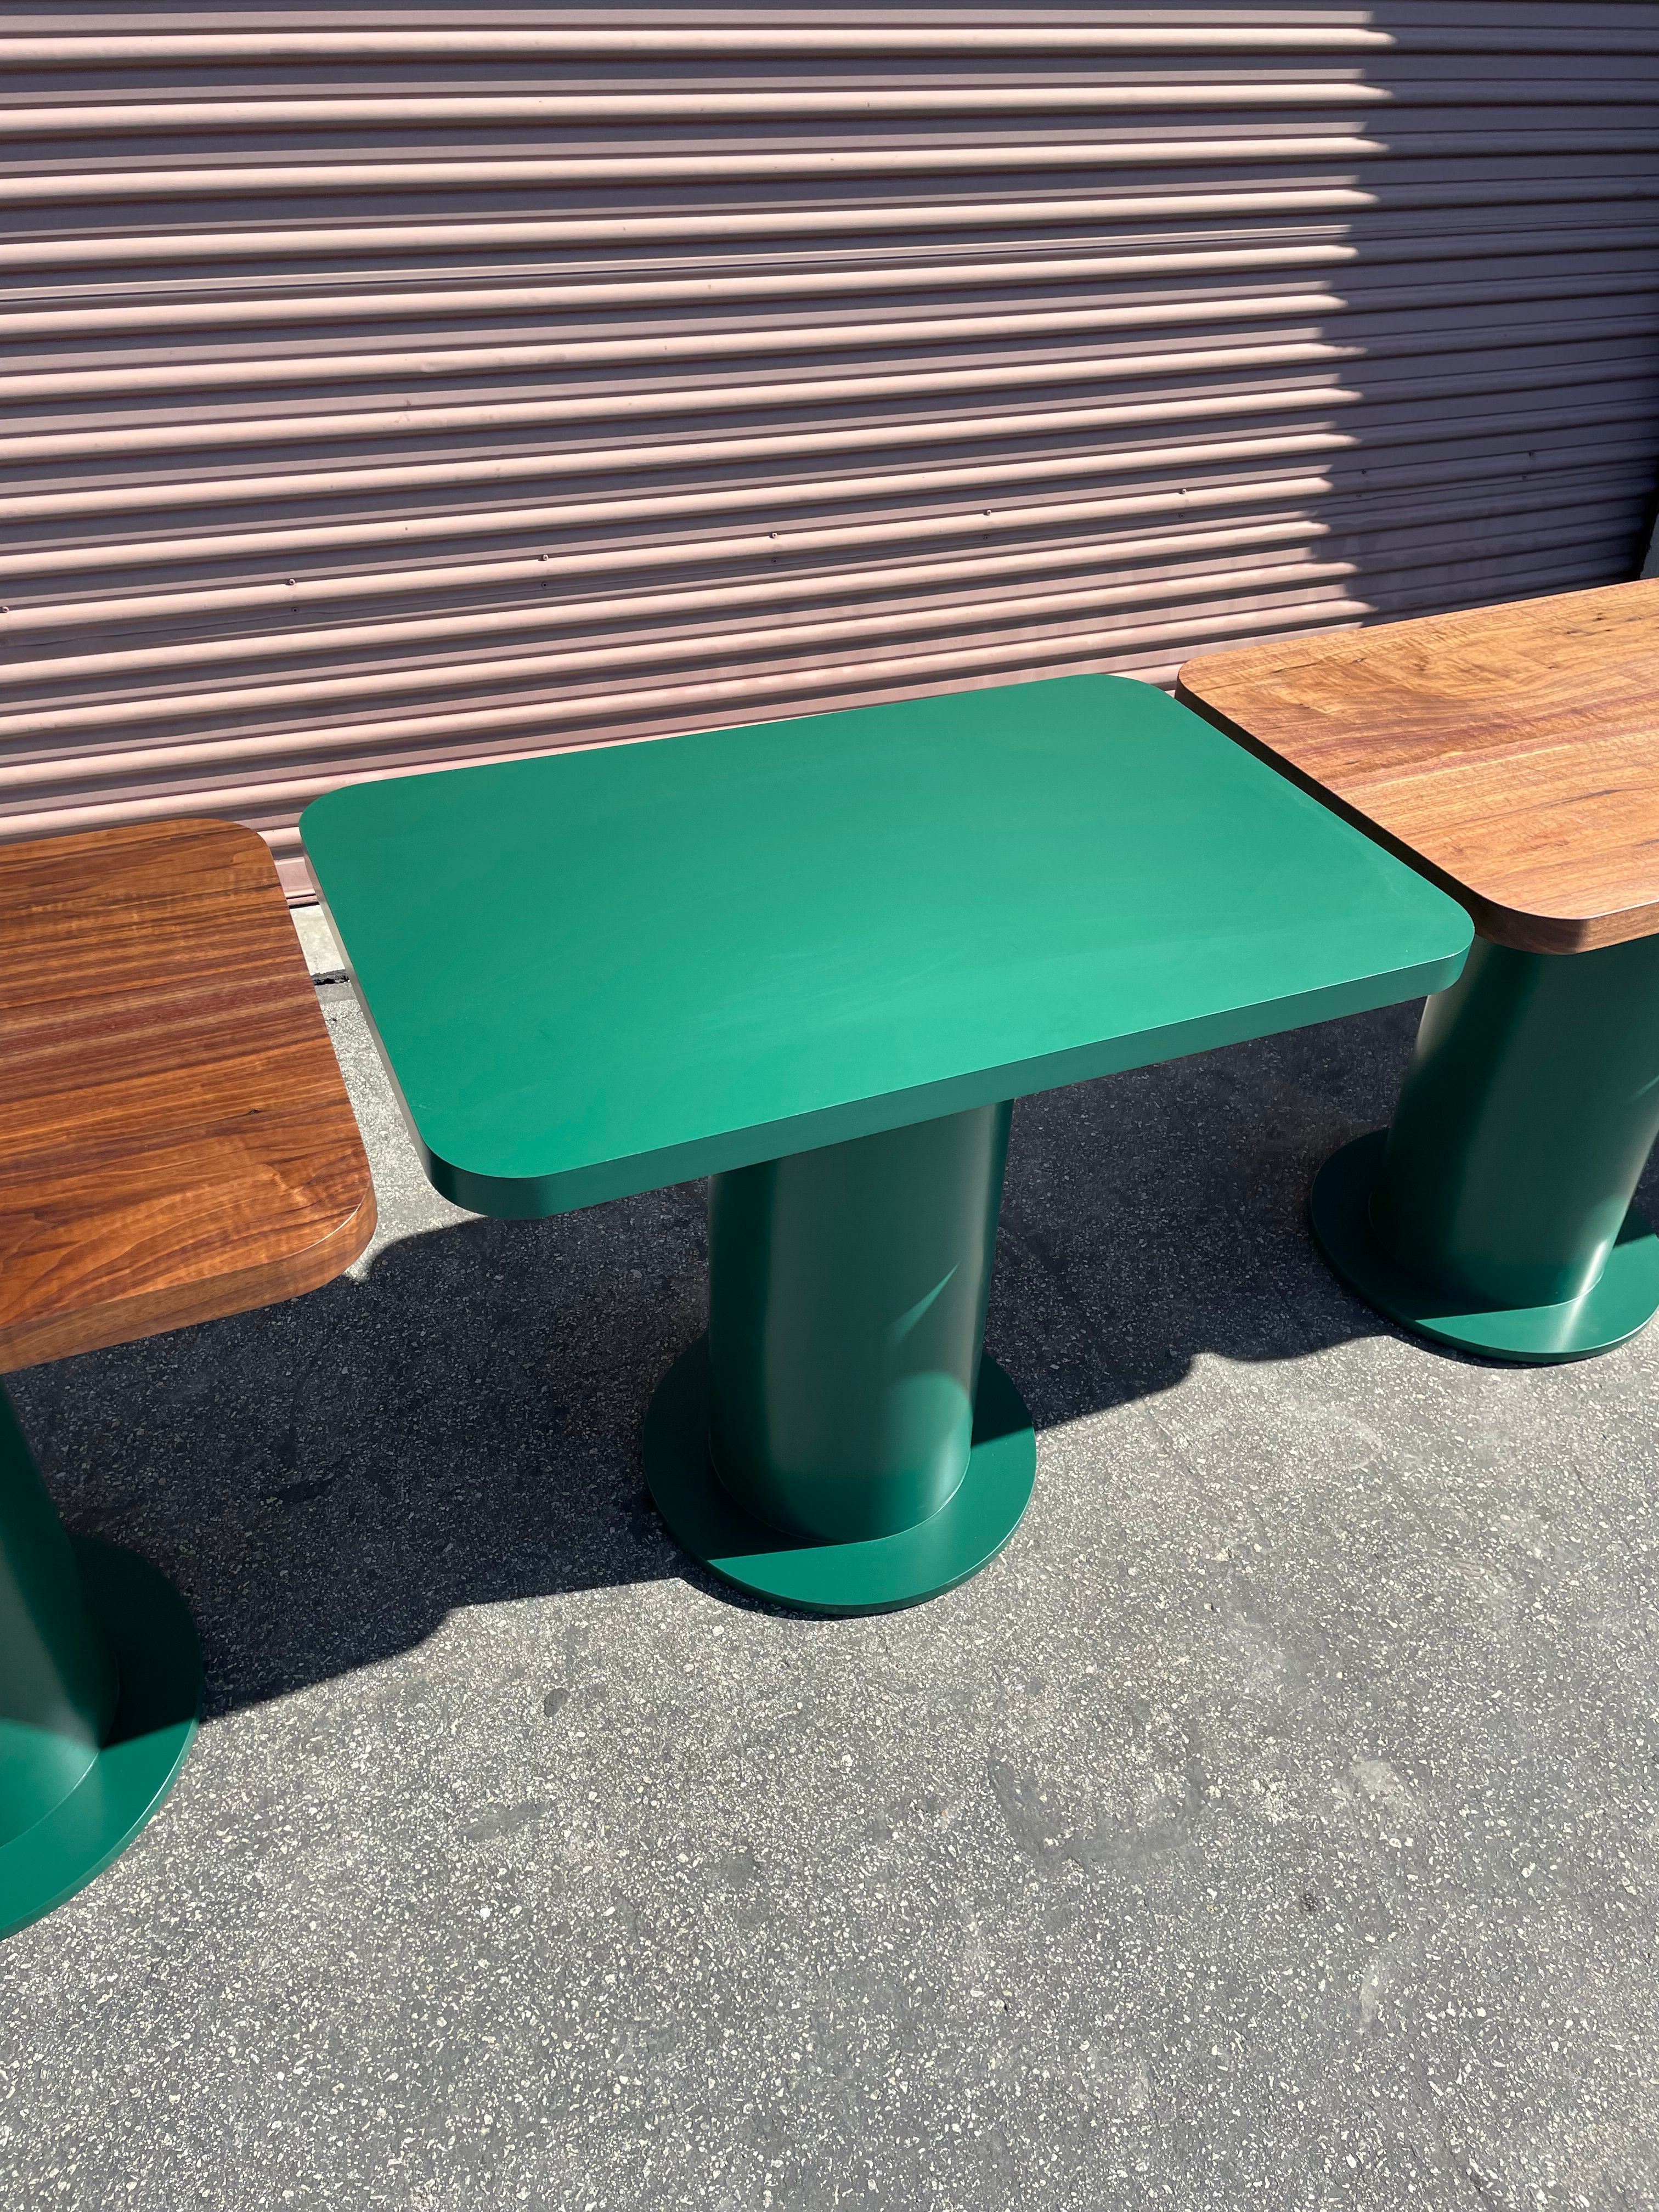  Pedestal Tables - Folklor LA product image 1